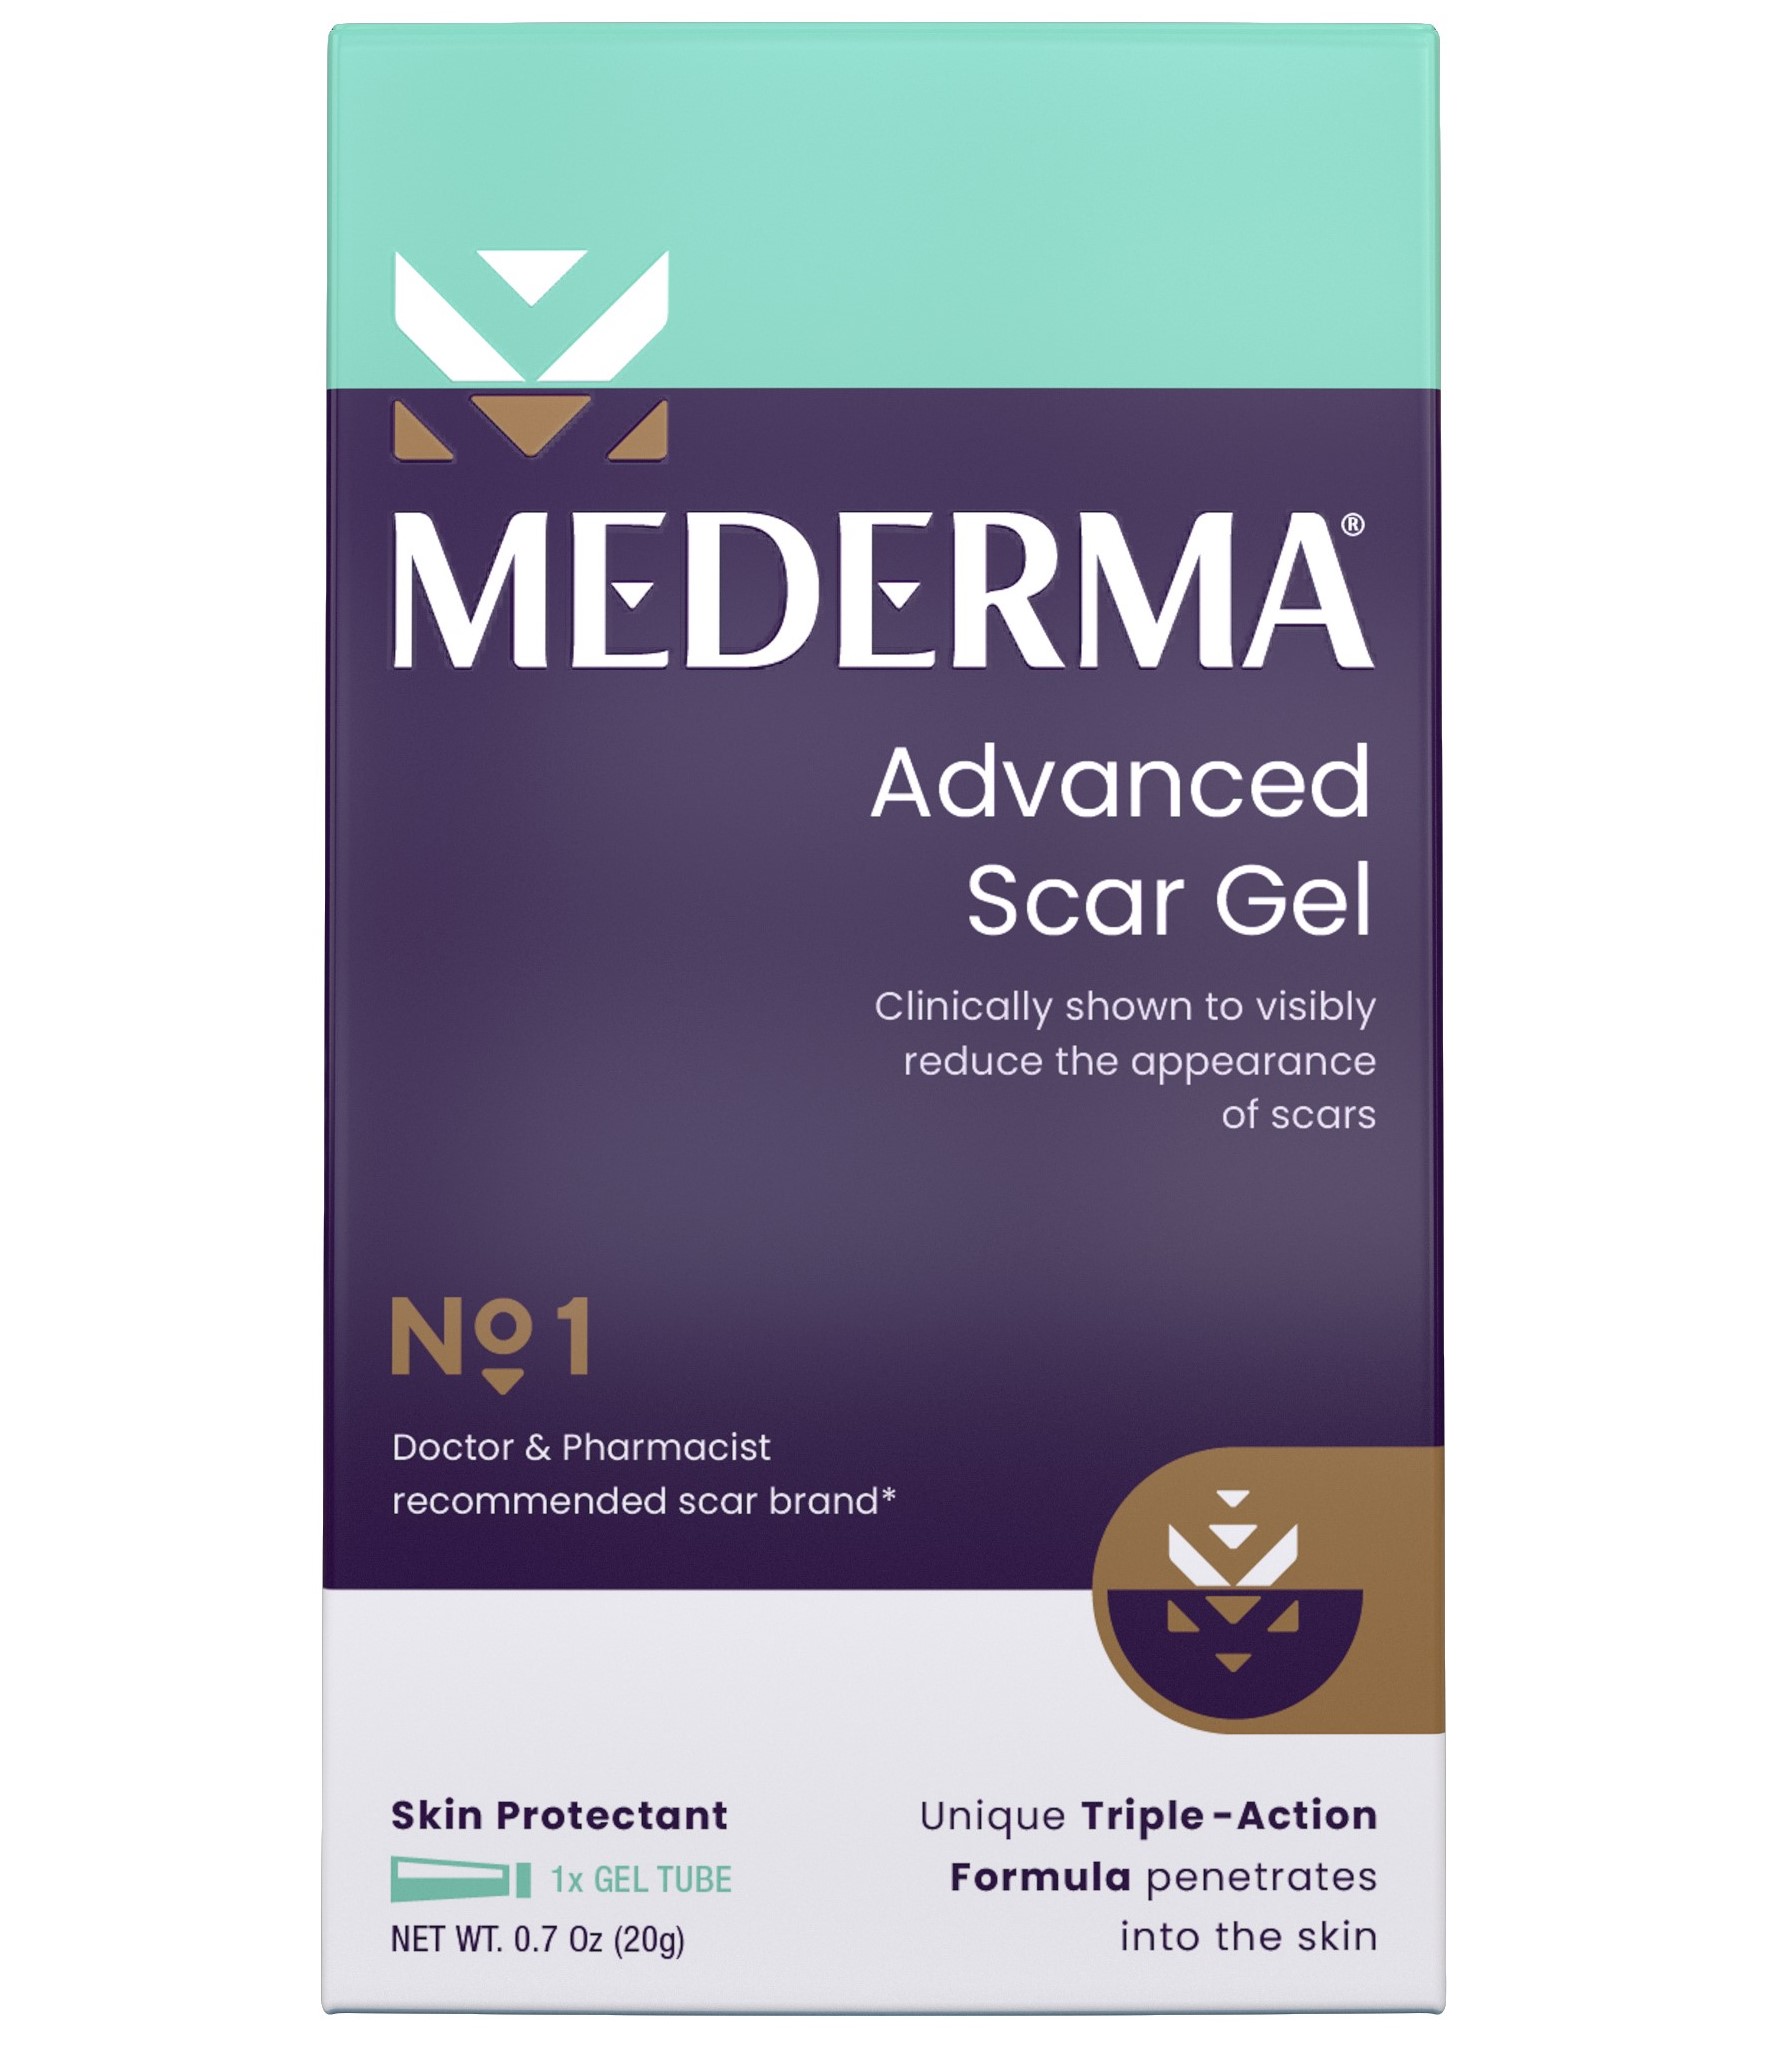 Mederma Advanced Scar Gel Scar Treatment, 0.70 oz (20g) - image 3 of 12